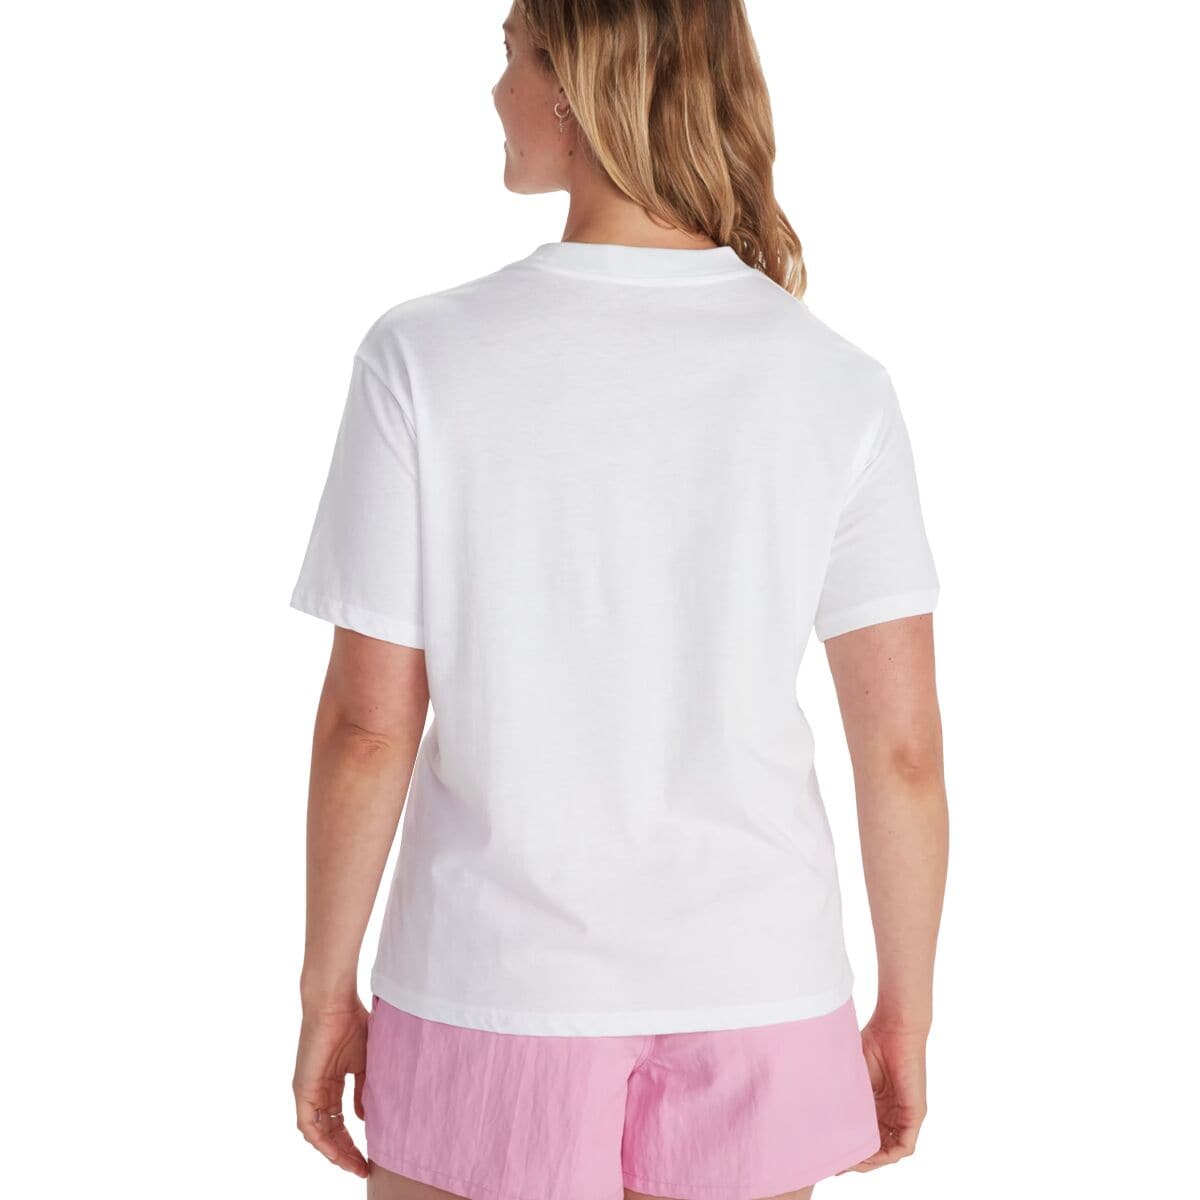 Peaks Short-Sleeve T-Shirt - Women's De beste aanbiedingen en ...